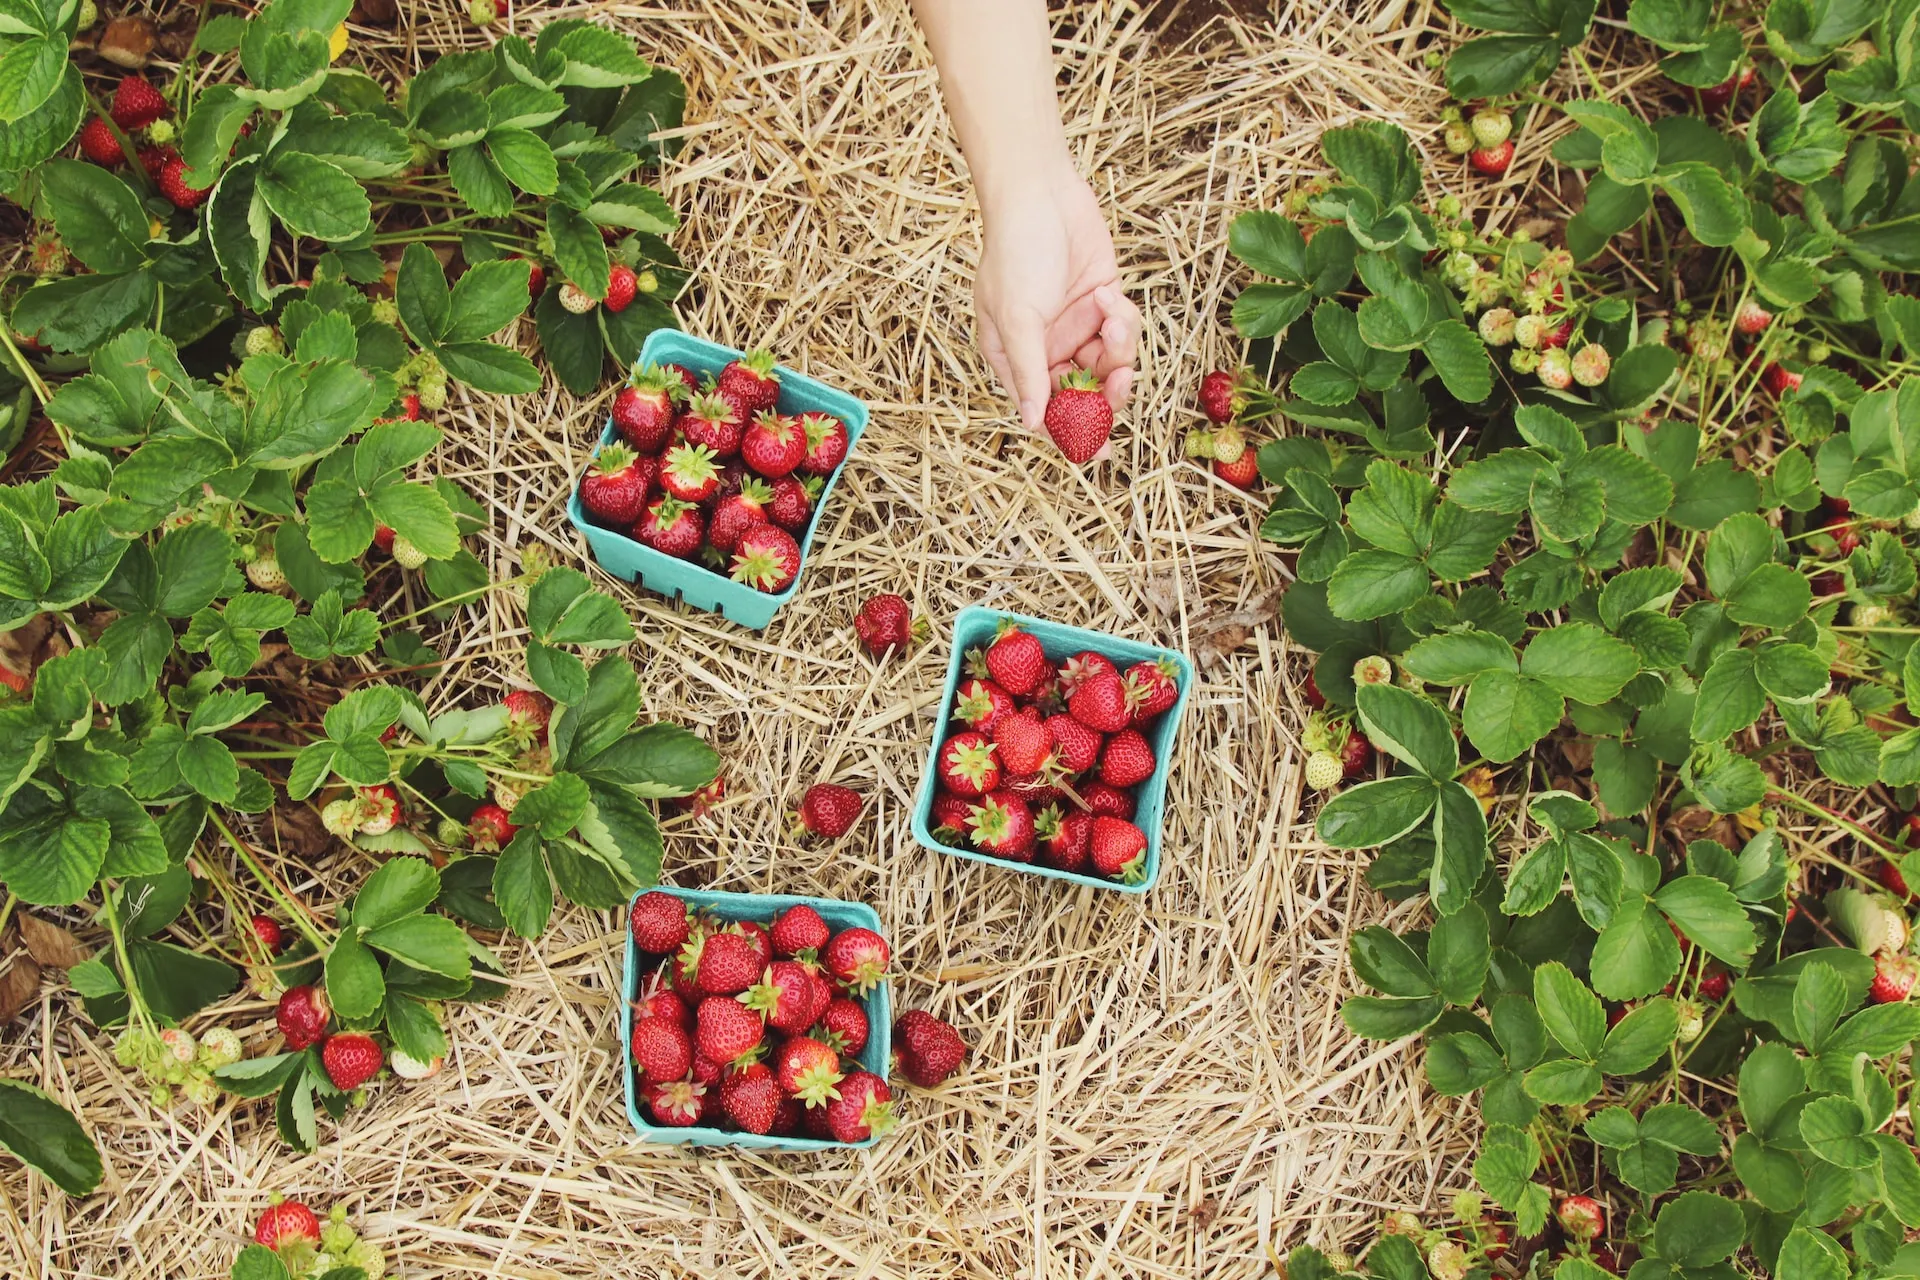 A photo of a strawberry garden